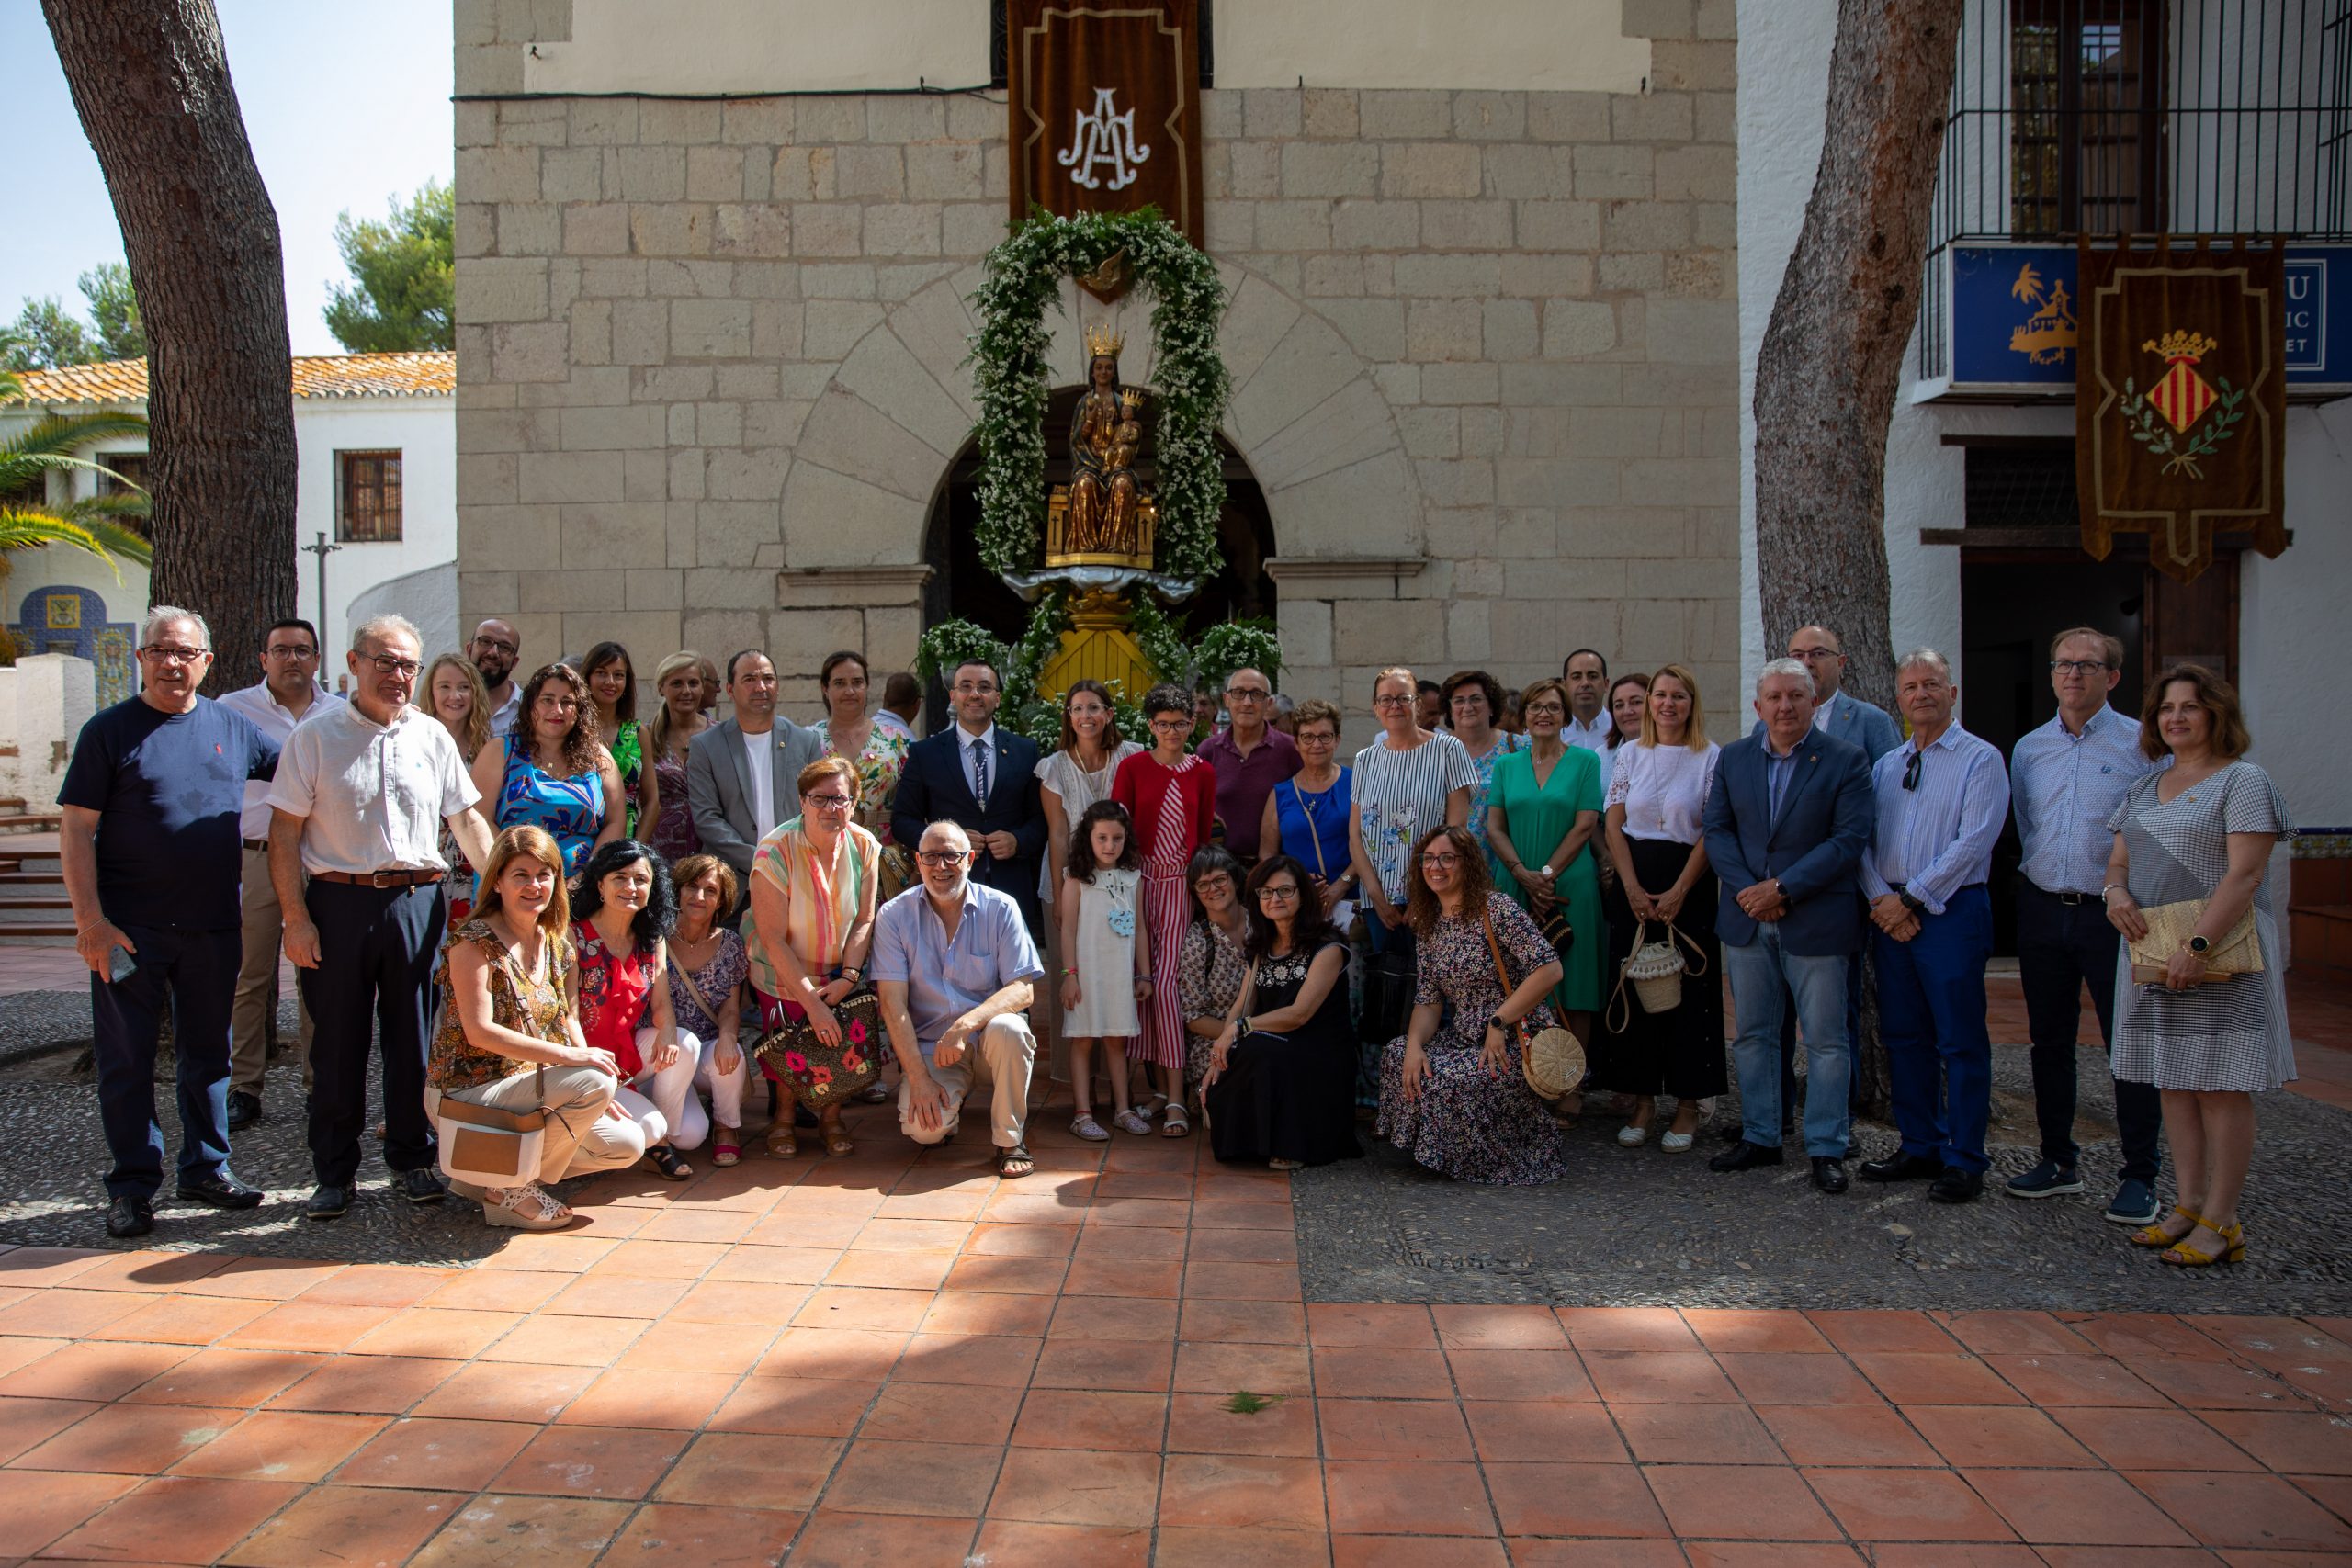 Vila-real da la bienvenida al verano con la tradicional Fiesta del Termet y el reparto de horchata y fartons